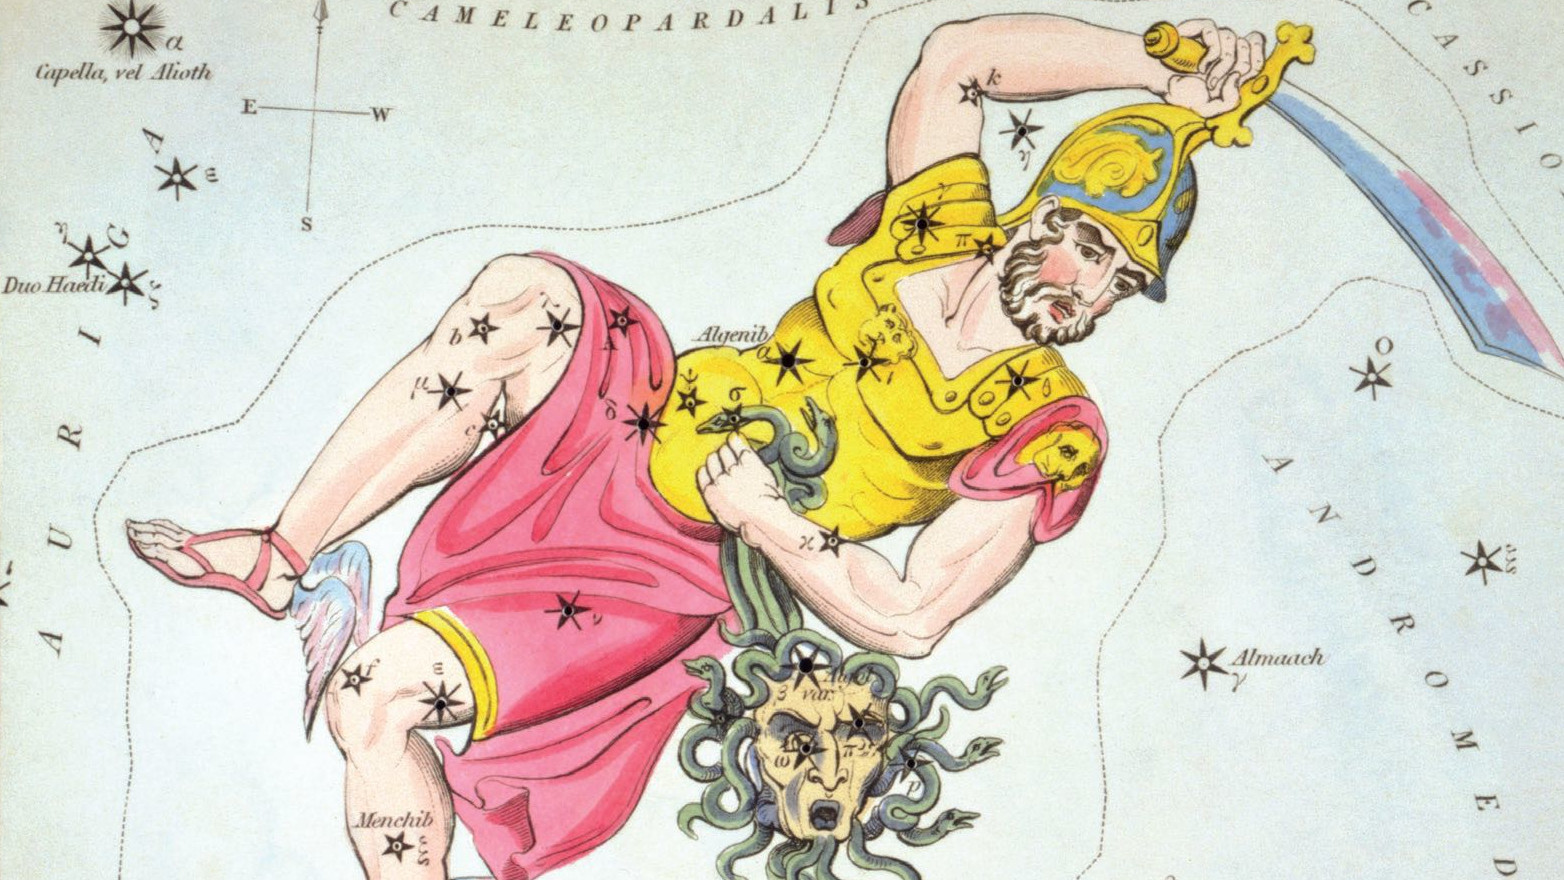 Ryciny gwiazdozbioru ukazują również bohatera Perseusza z odciętą głową Meduzy, którą symbolizuje gwiazda Algol.